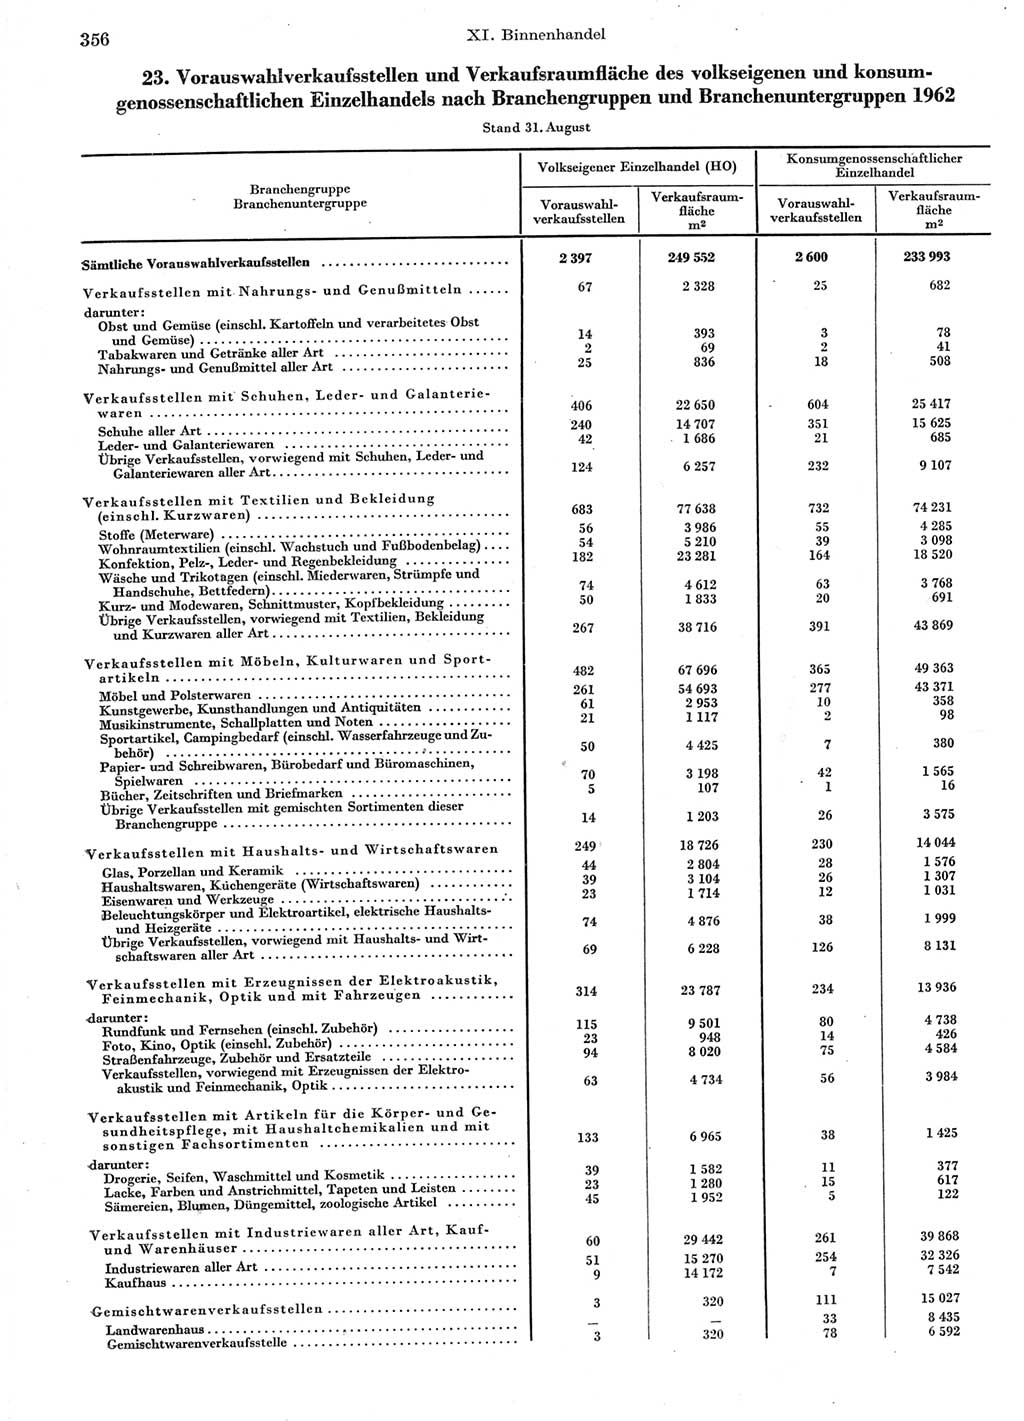 Statistisches Jahrbuch der Deutschen Demokratischen Republik (DDR) 1963, Seite 356 (Stat. Jb. DDR 1963, S. 356)